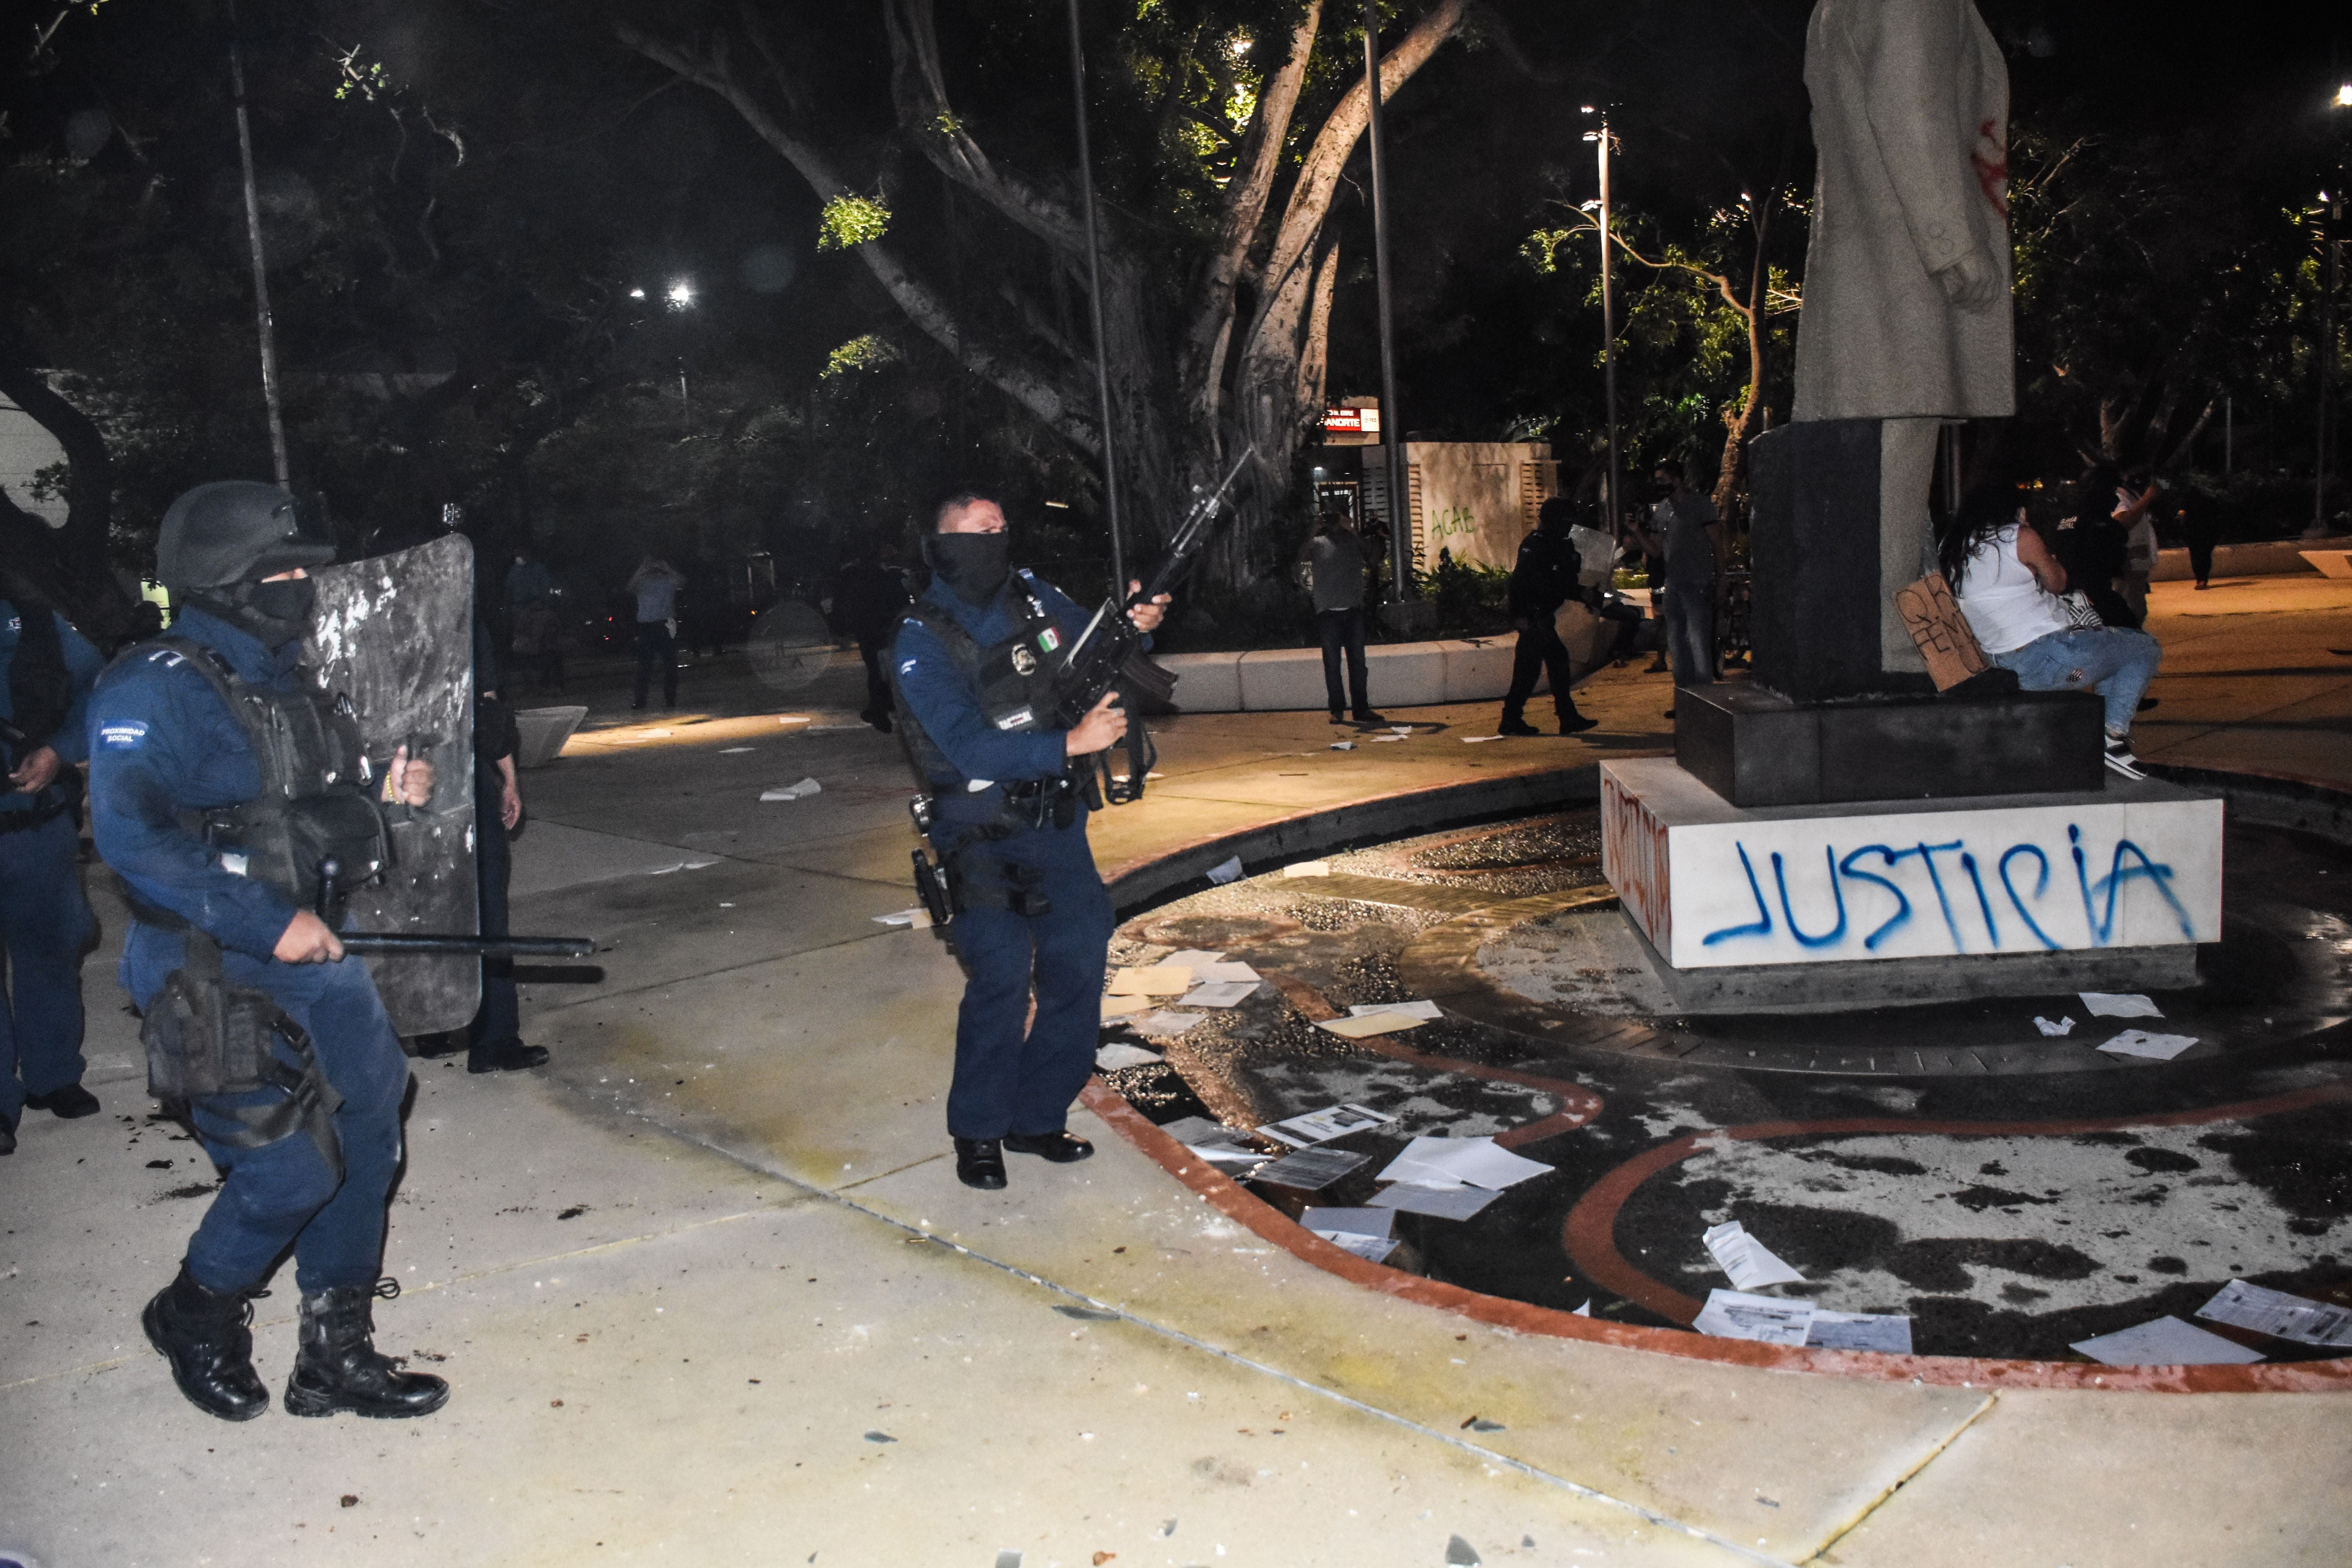 Oficiales de policía dispersan una protesta contra el asesinato de una mujer en una esquina del Palacio municipal en Cancún, Quintana Roo, México, el 9 de Noviembre de 2020.-